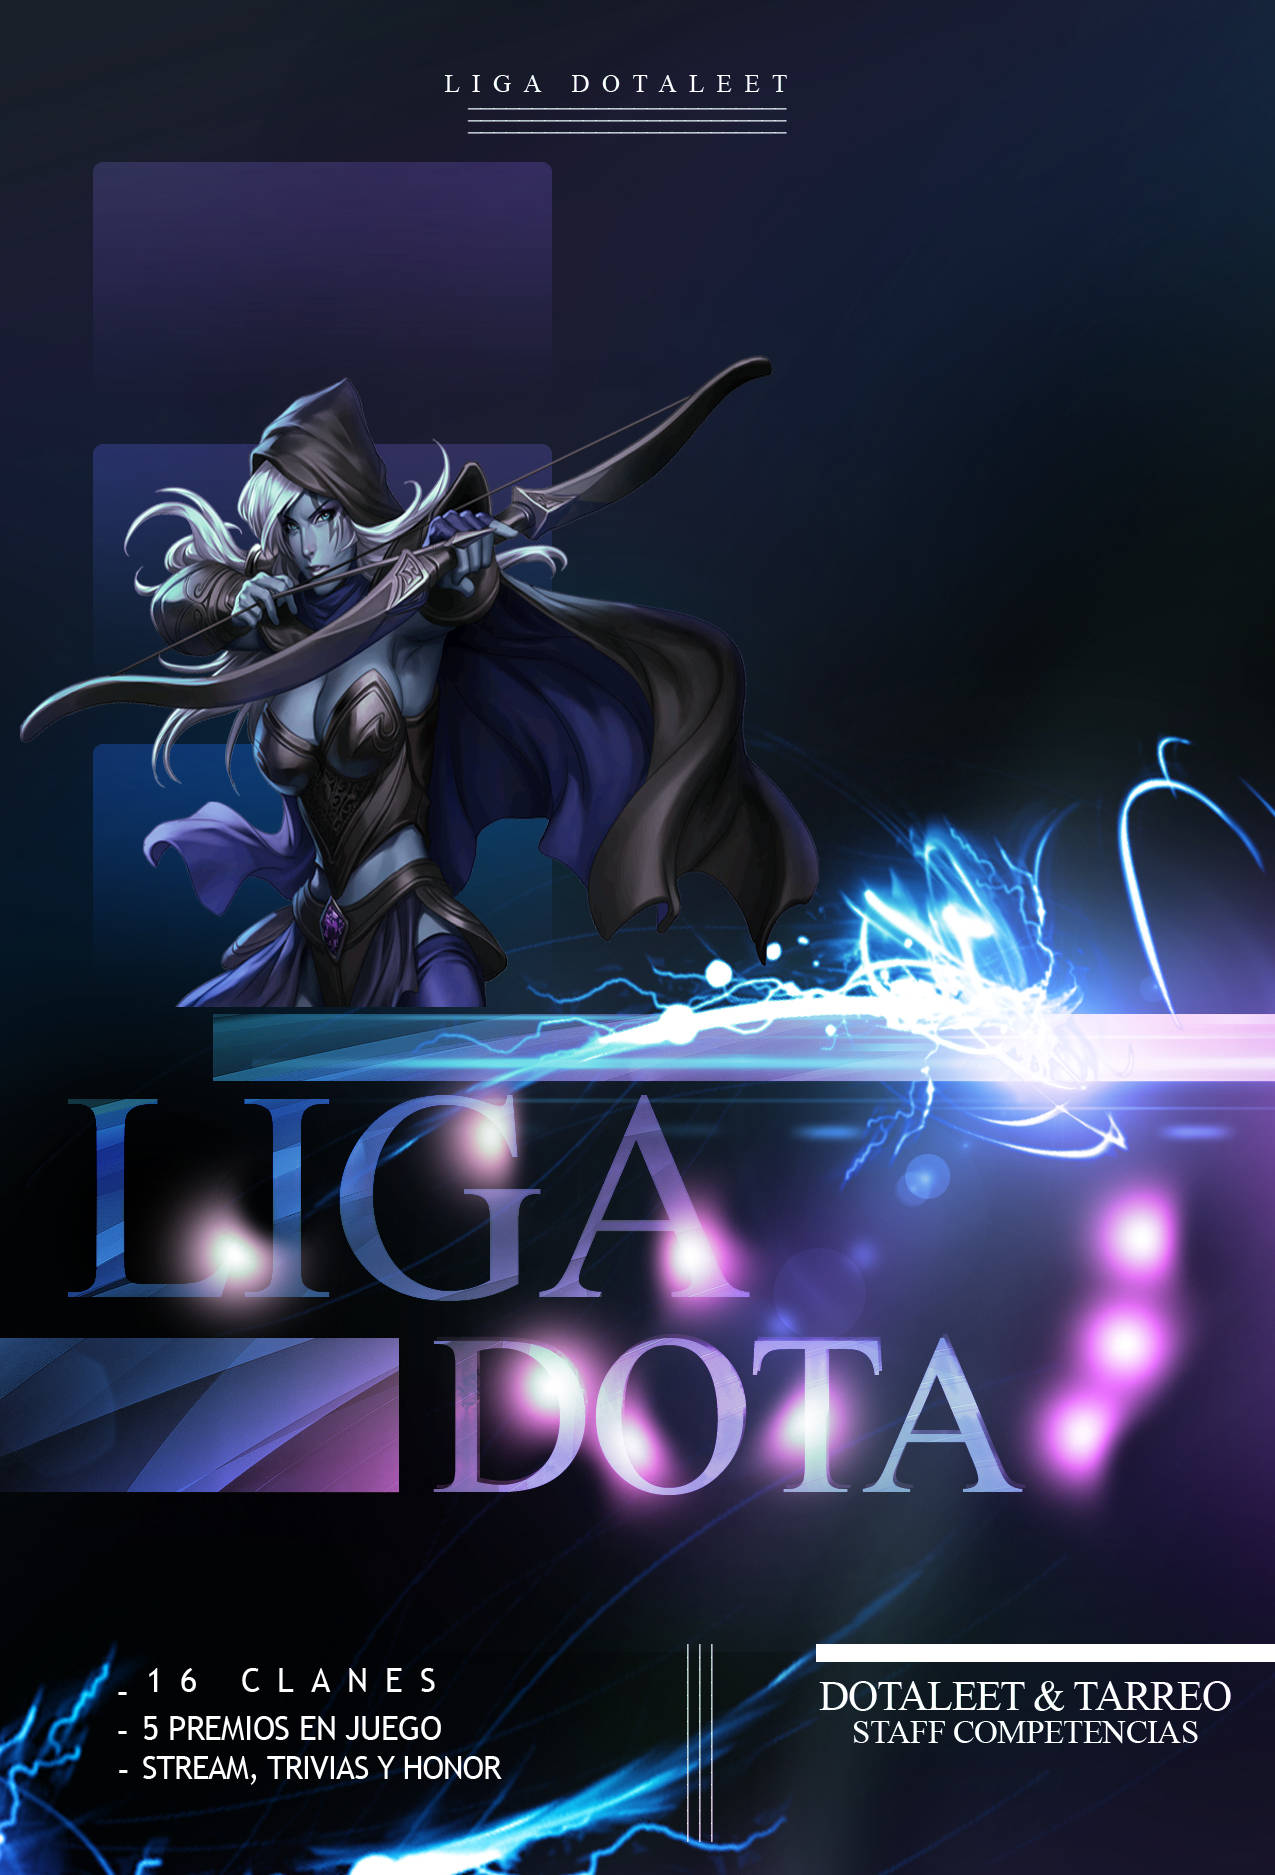 logo de Liga Dotaleet 2013